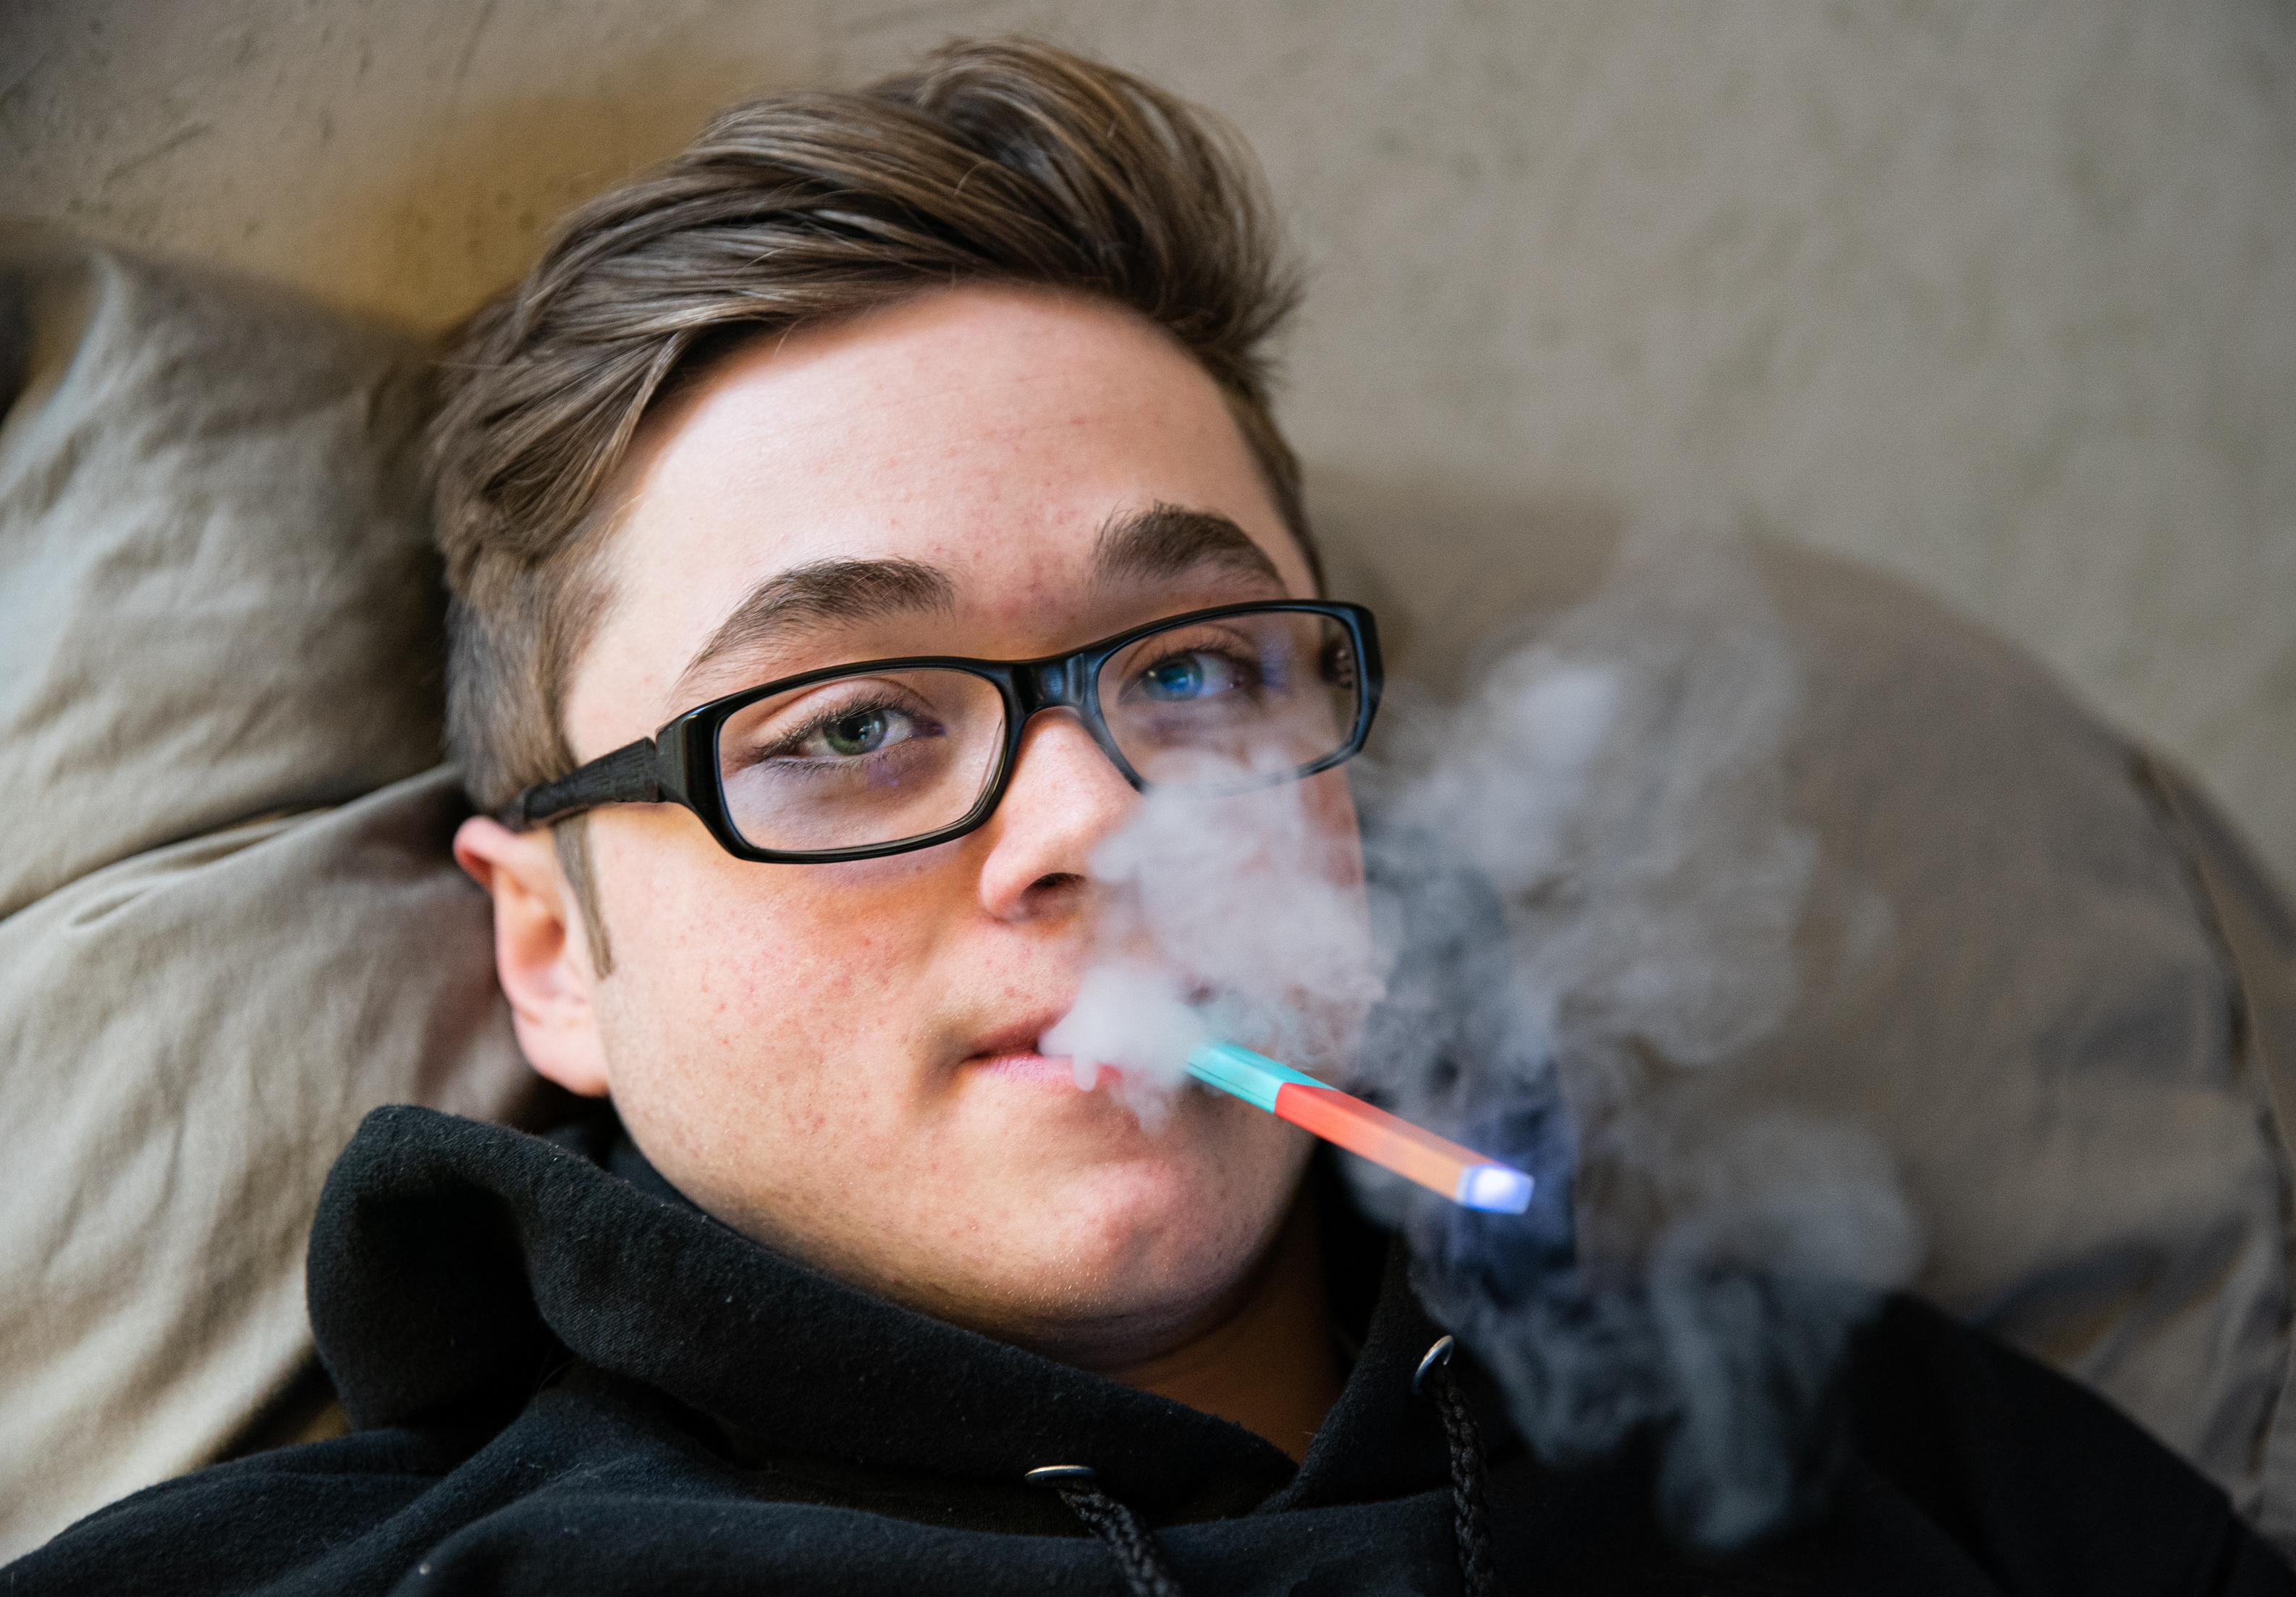 Jugendliche vapen: Junge raucht E-Zigarette